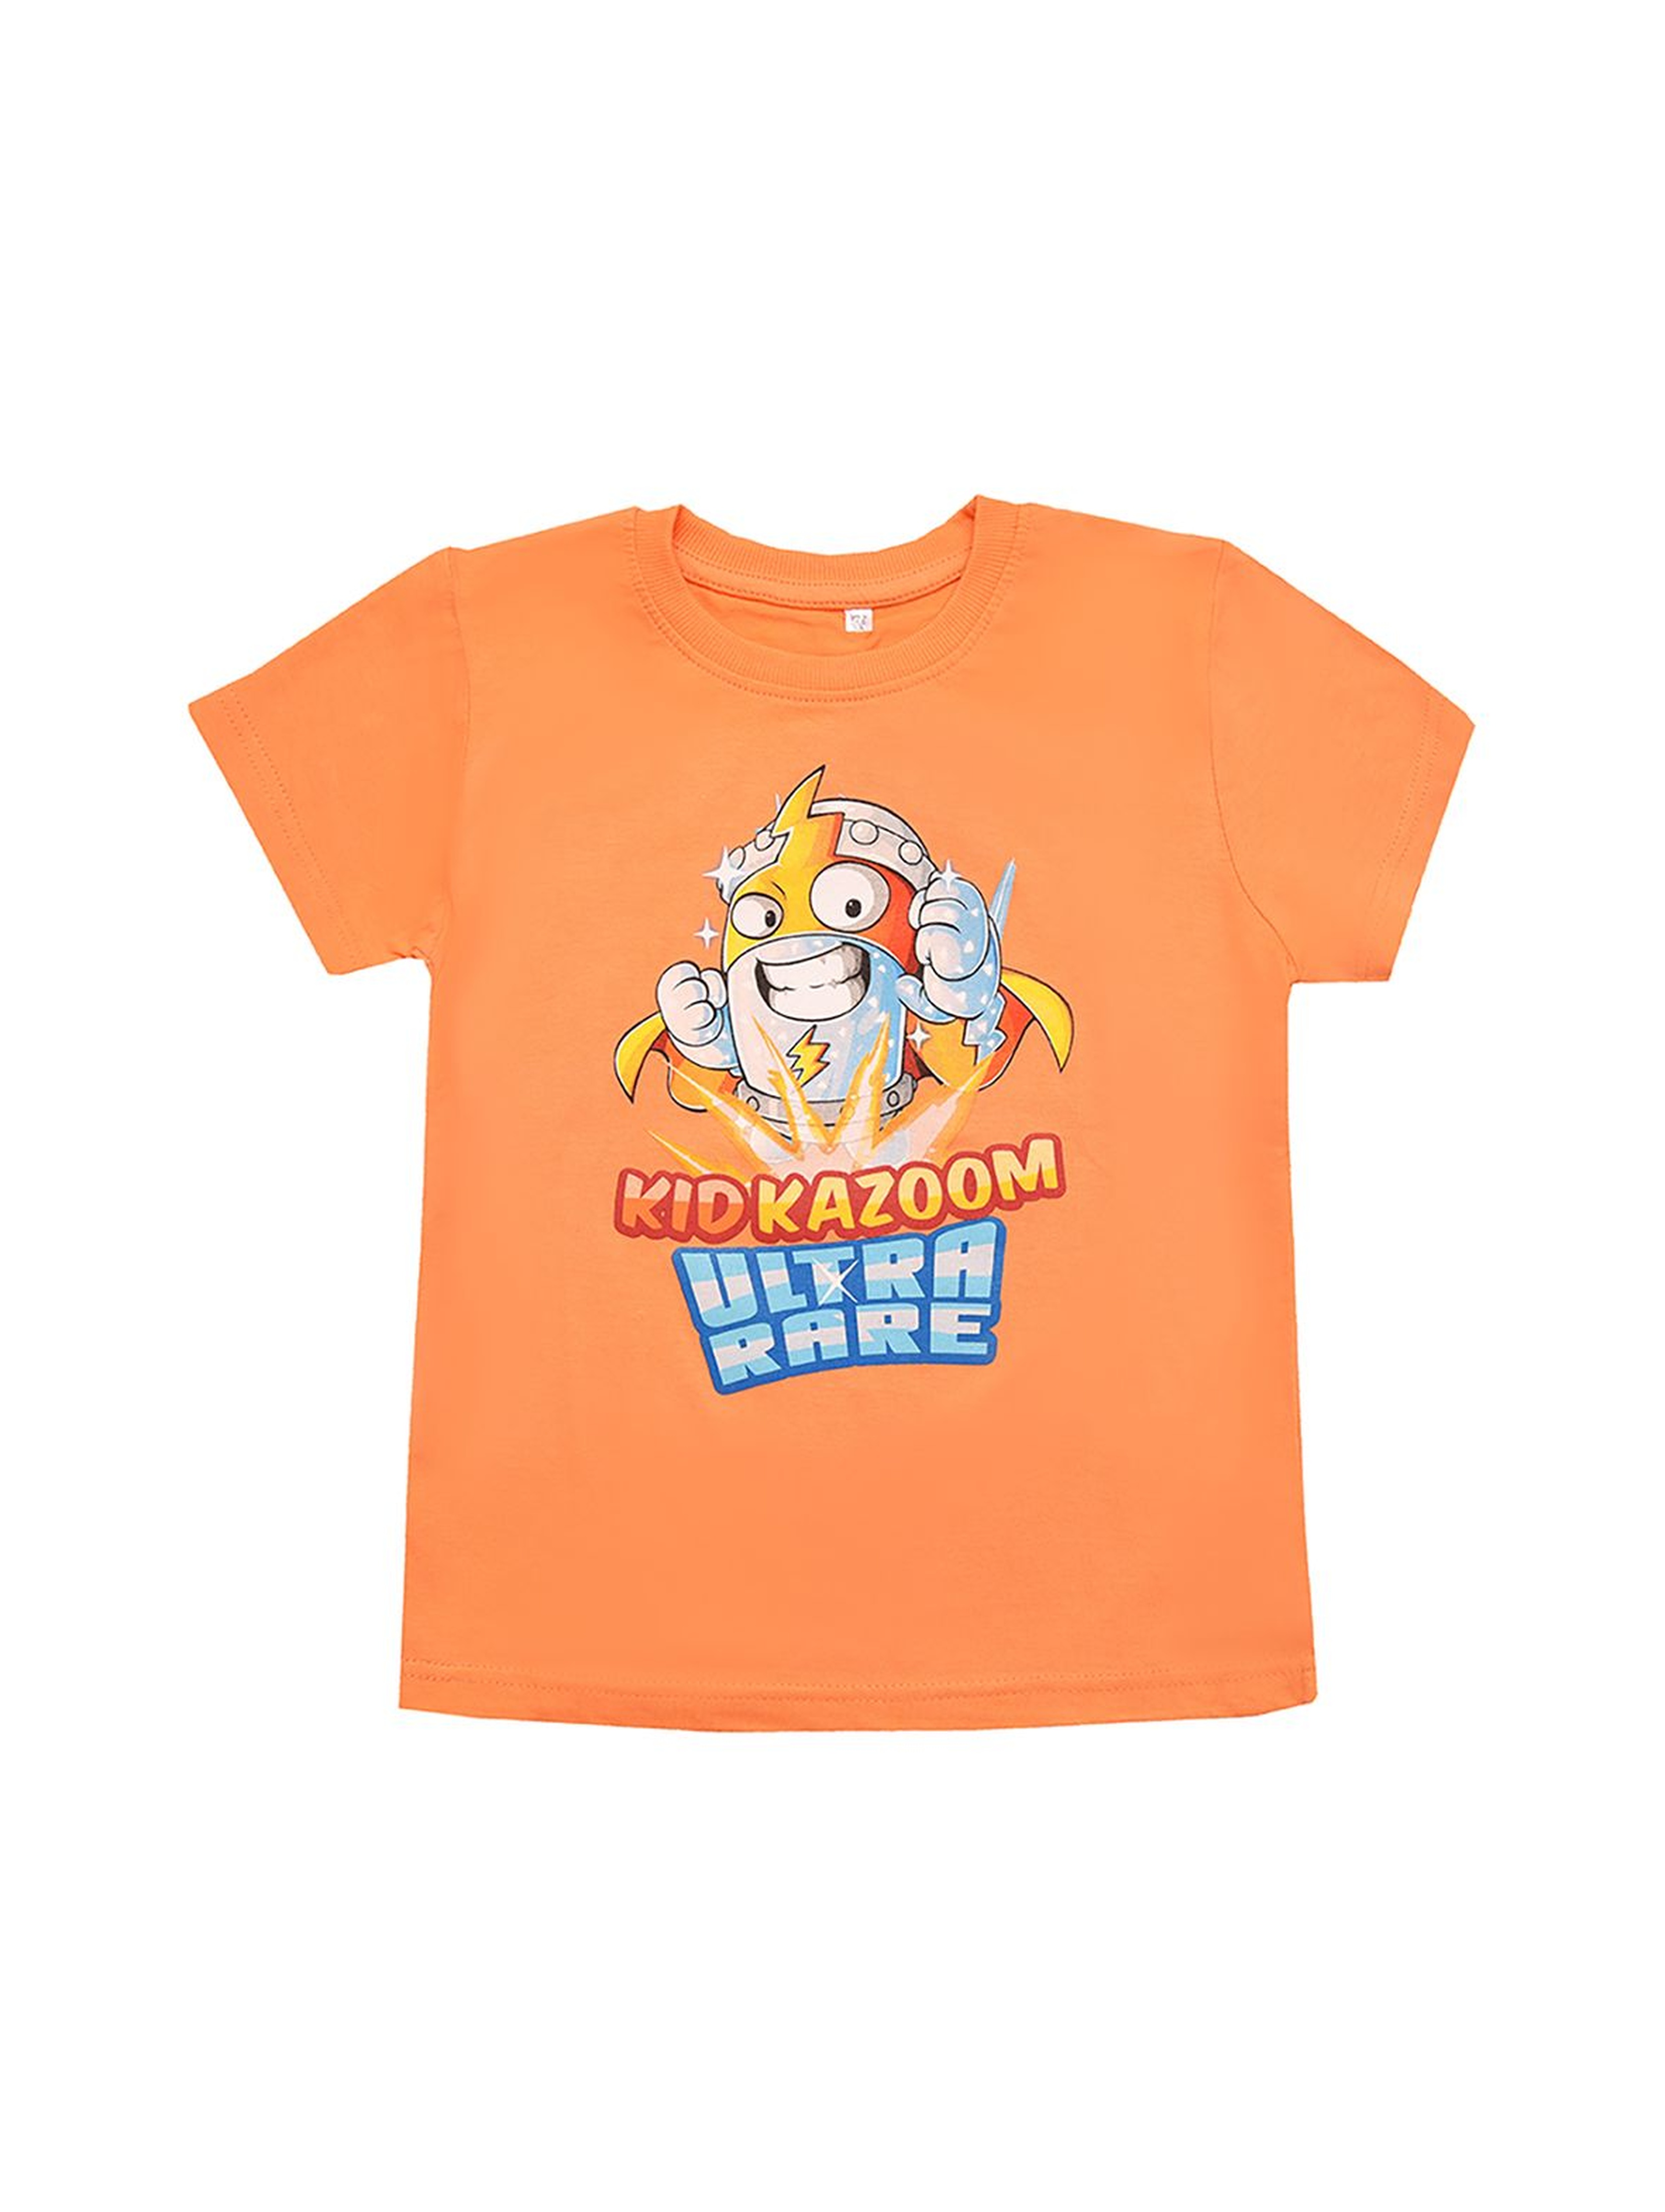 Bawełniany t-shirt chłopięcy Super Zings - pomarańczowy